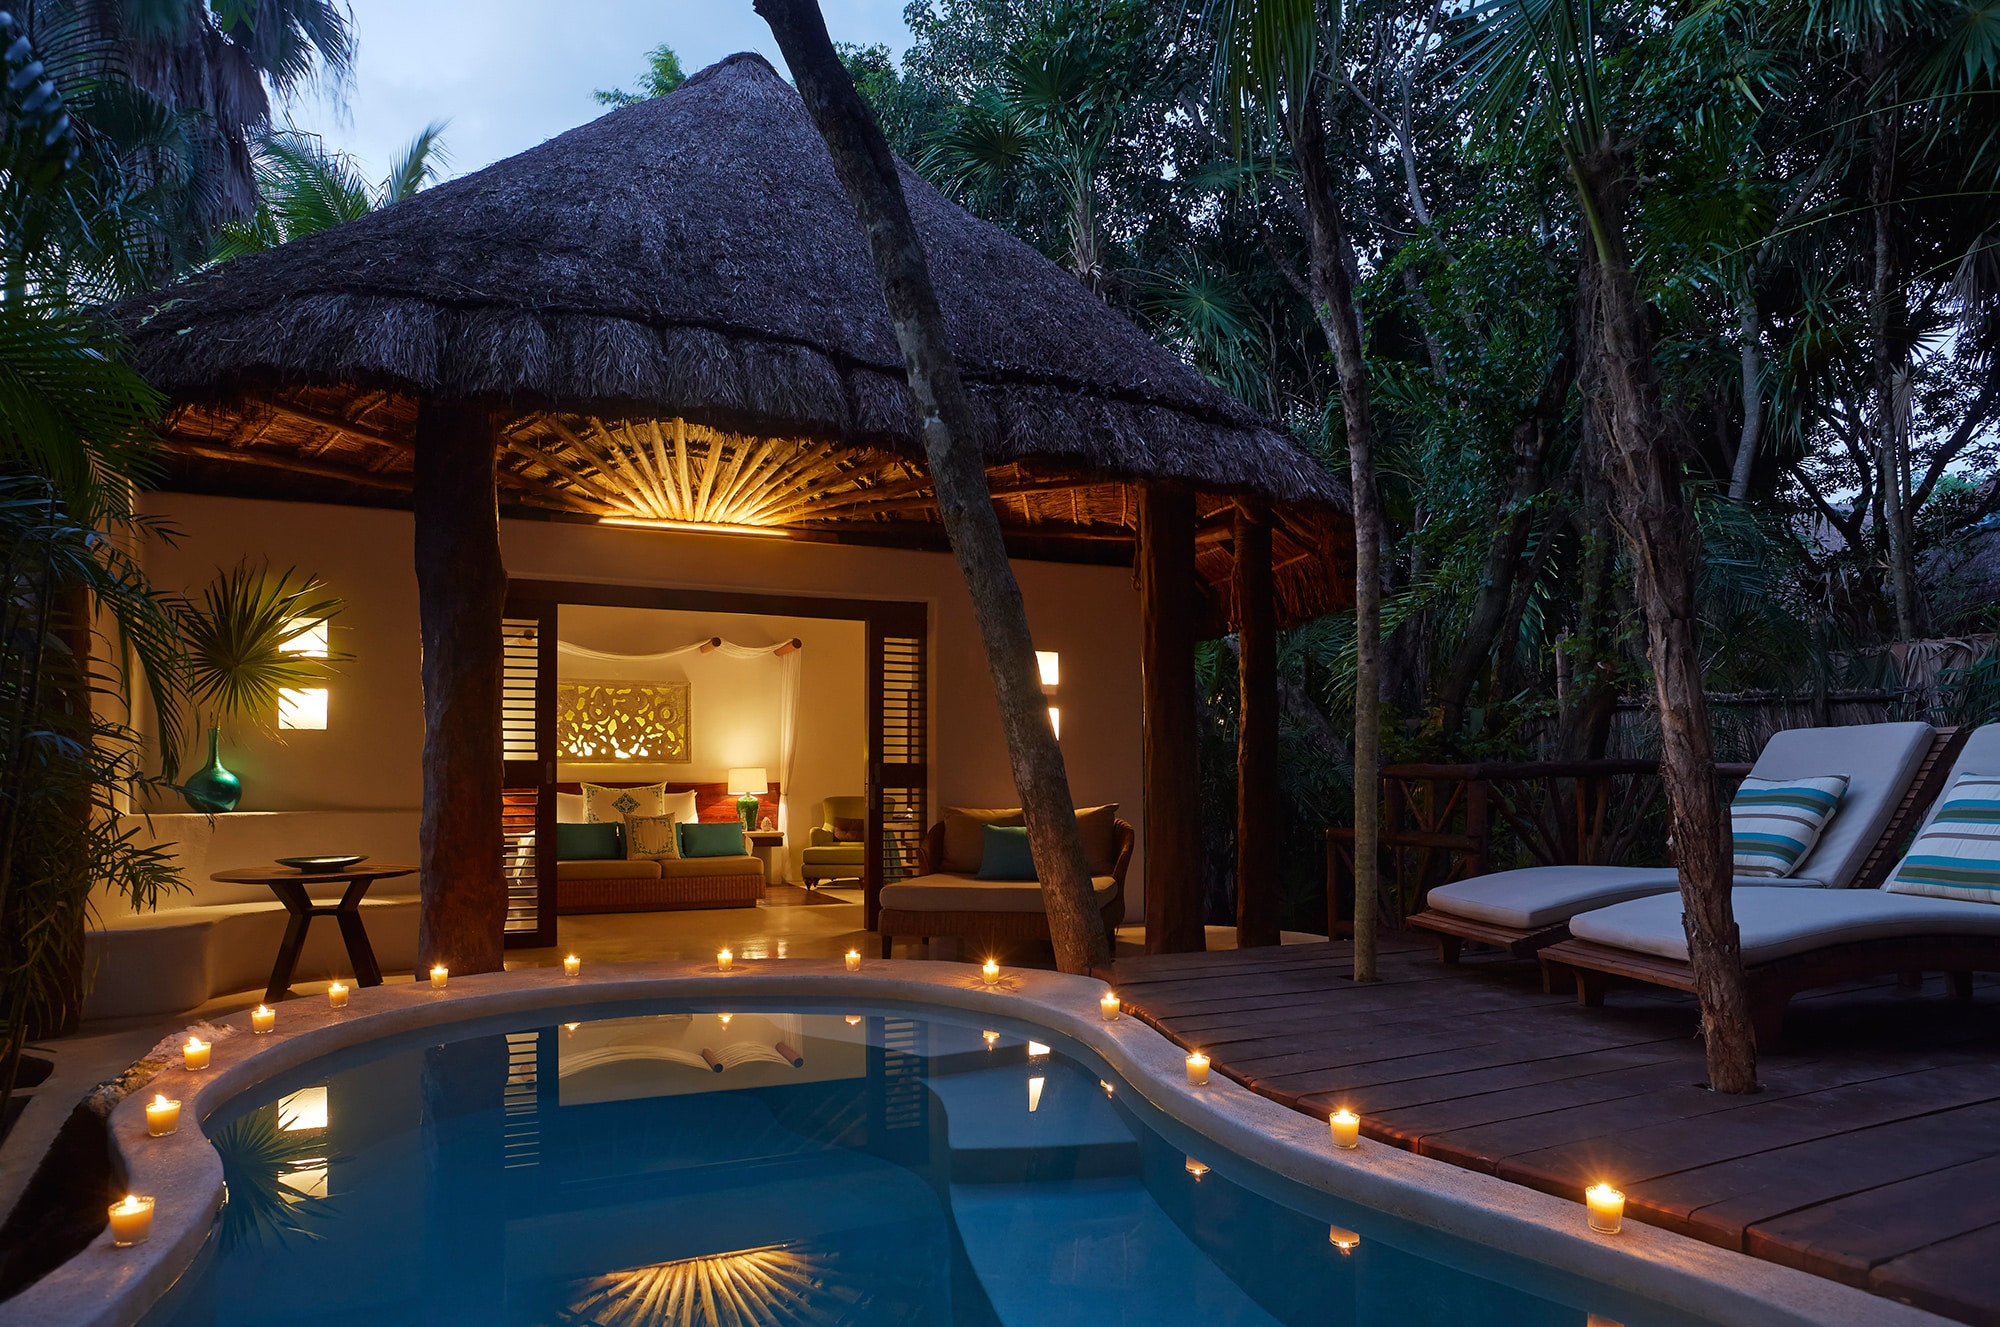 Most Romantic Hotels: Viceroy Riviera Maya